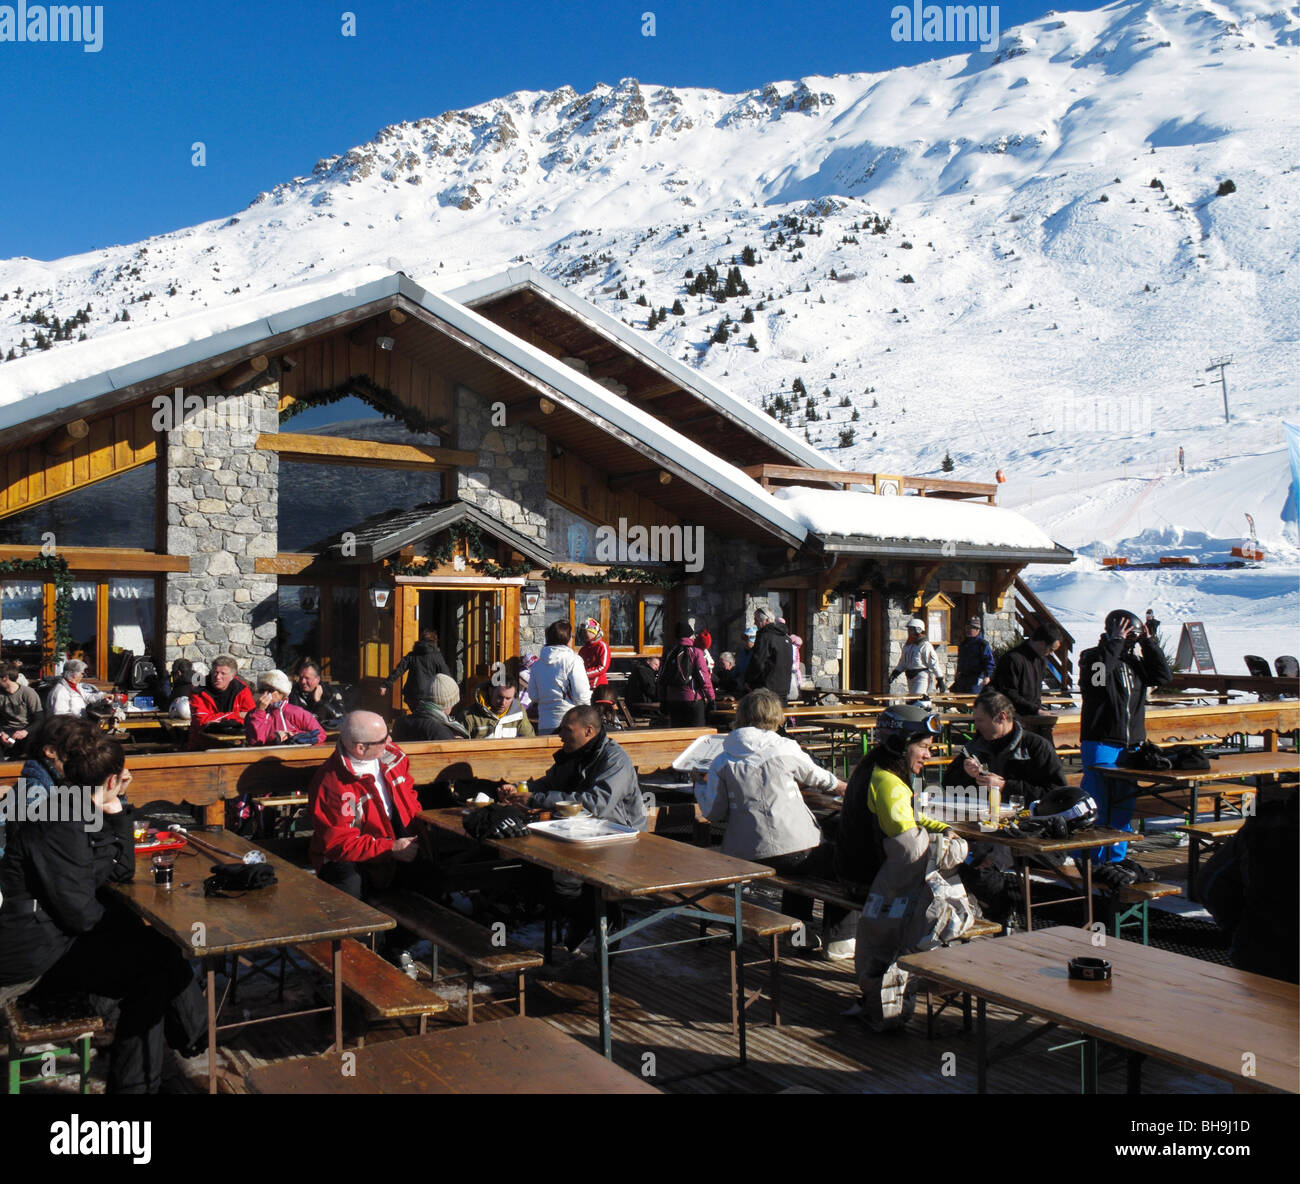 Les skieurs ayant déjeuner dans un restaurant de montagne à l'altiport de Méribel, station de ski 3 Vallées, Tarentaise, Savoie, France Banque D'Images